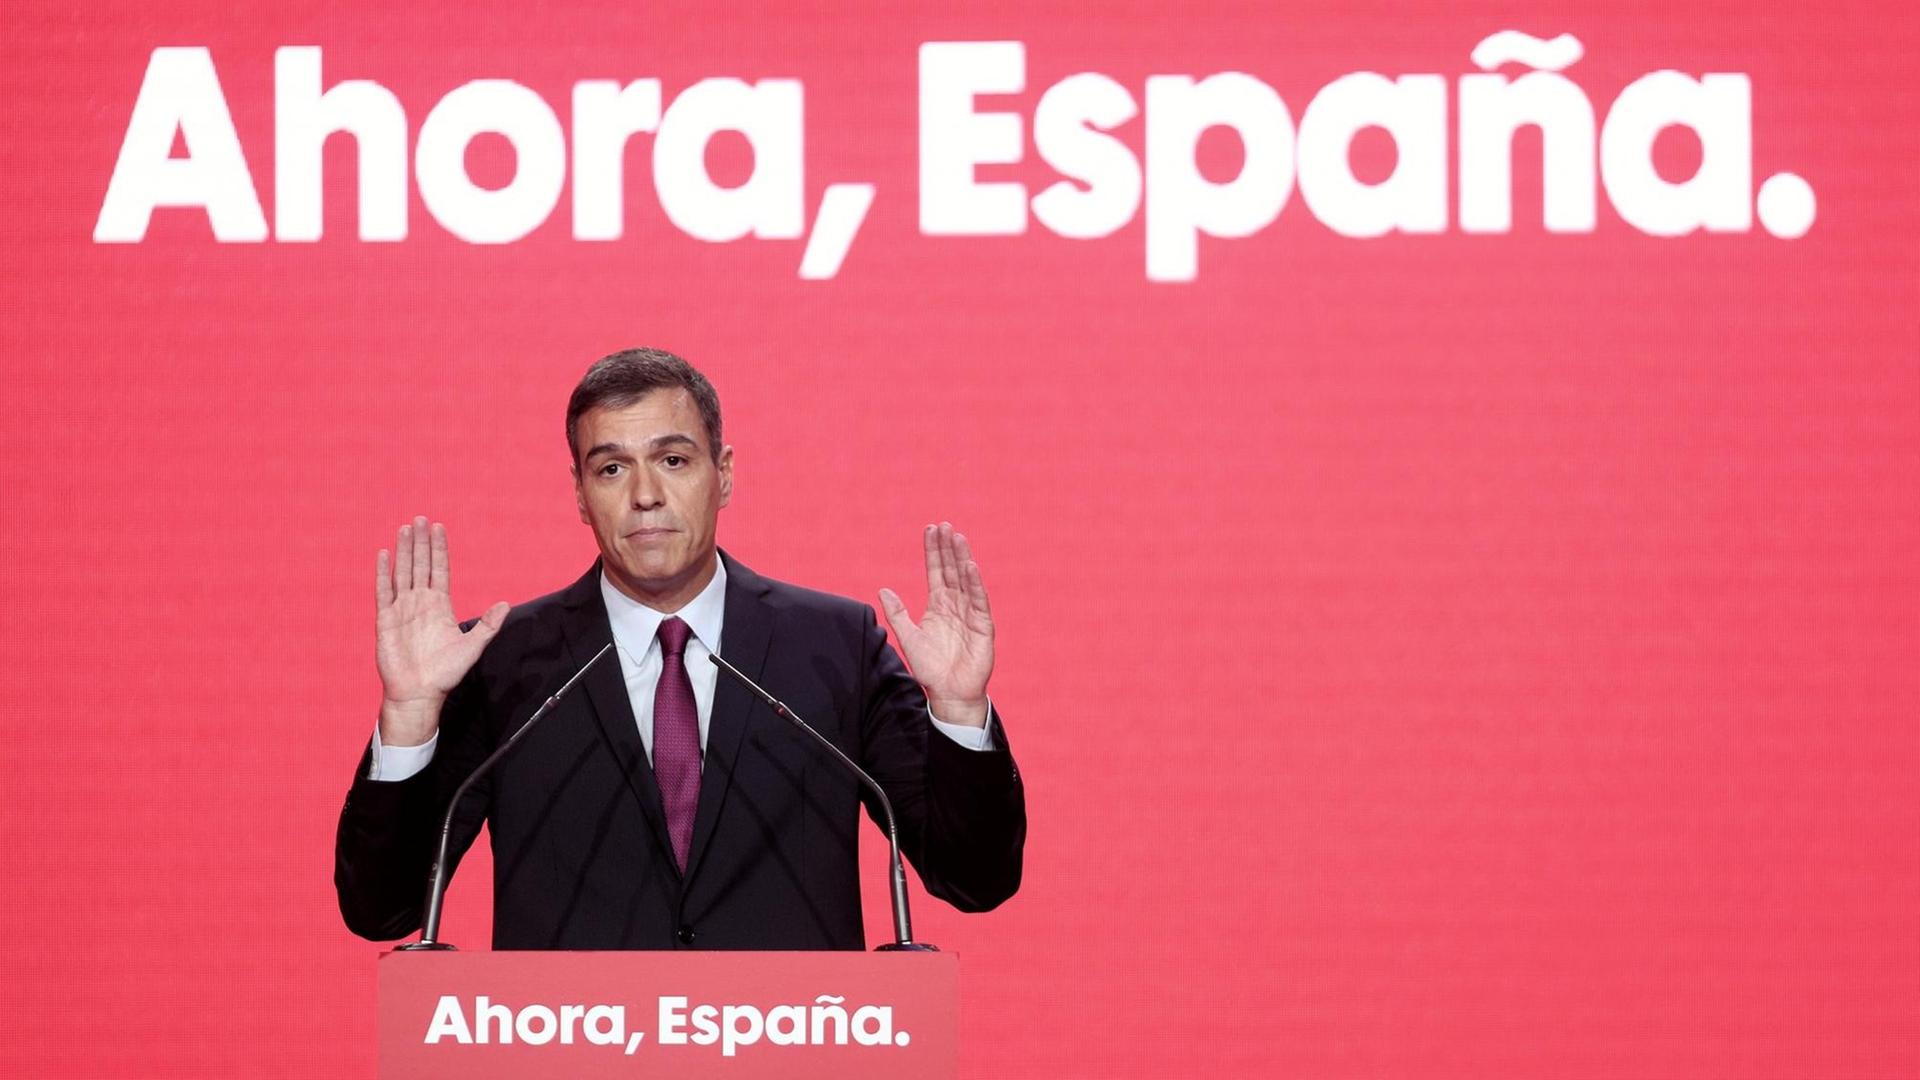 Pedro Sanchez, amtierender Ministerpräsident von Spanien, hält in Madrid eine Rede bei der Präsentation des Slogans der Sozialistischen Partei (PSOE) für die Neuwahlen am 10. November. Der Slogan lautet "Ahora Espana" - übersetzt: Jetzt, Spanien